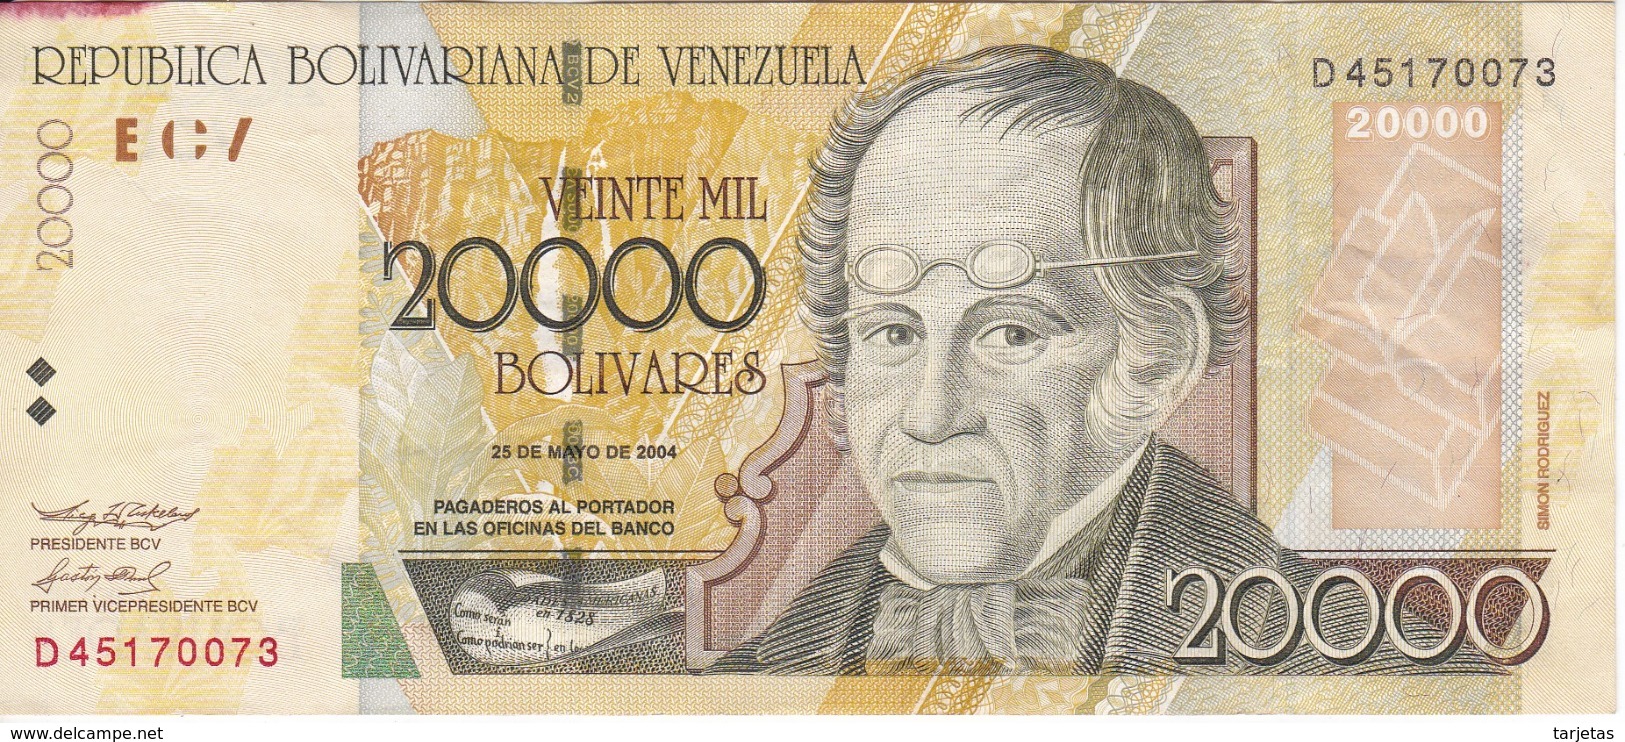 BILLETE DE VENEZUELA DE 20000 BOLIVARES DEL AÑO 2004  (BANK NOTE) - Venezuela